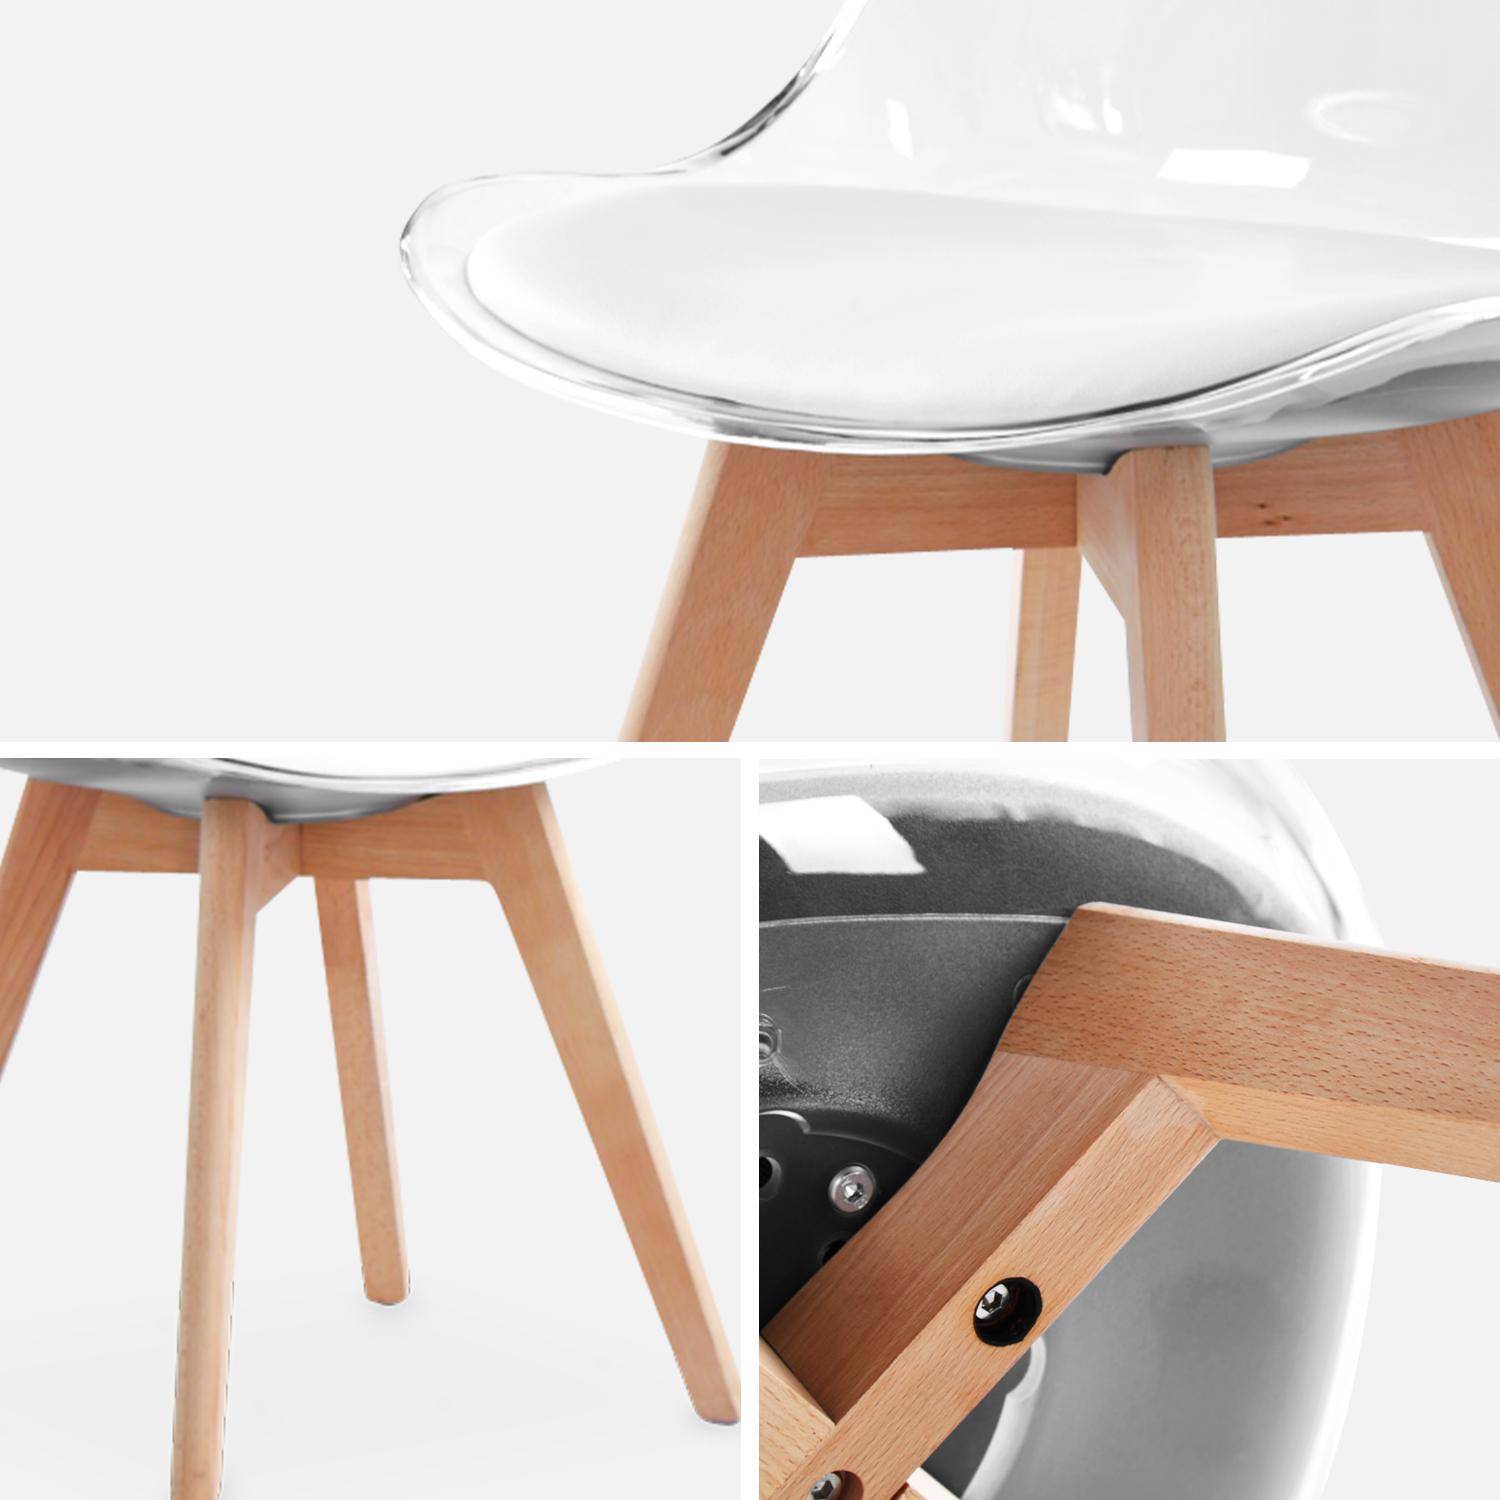 Juego de 4 sillas escandinavas - Lagertha - patas de madera, asientos individuales, cojín blanco, carcasa transparente  Photo6